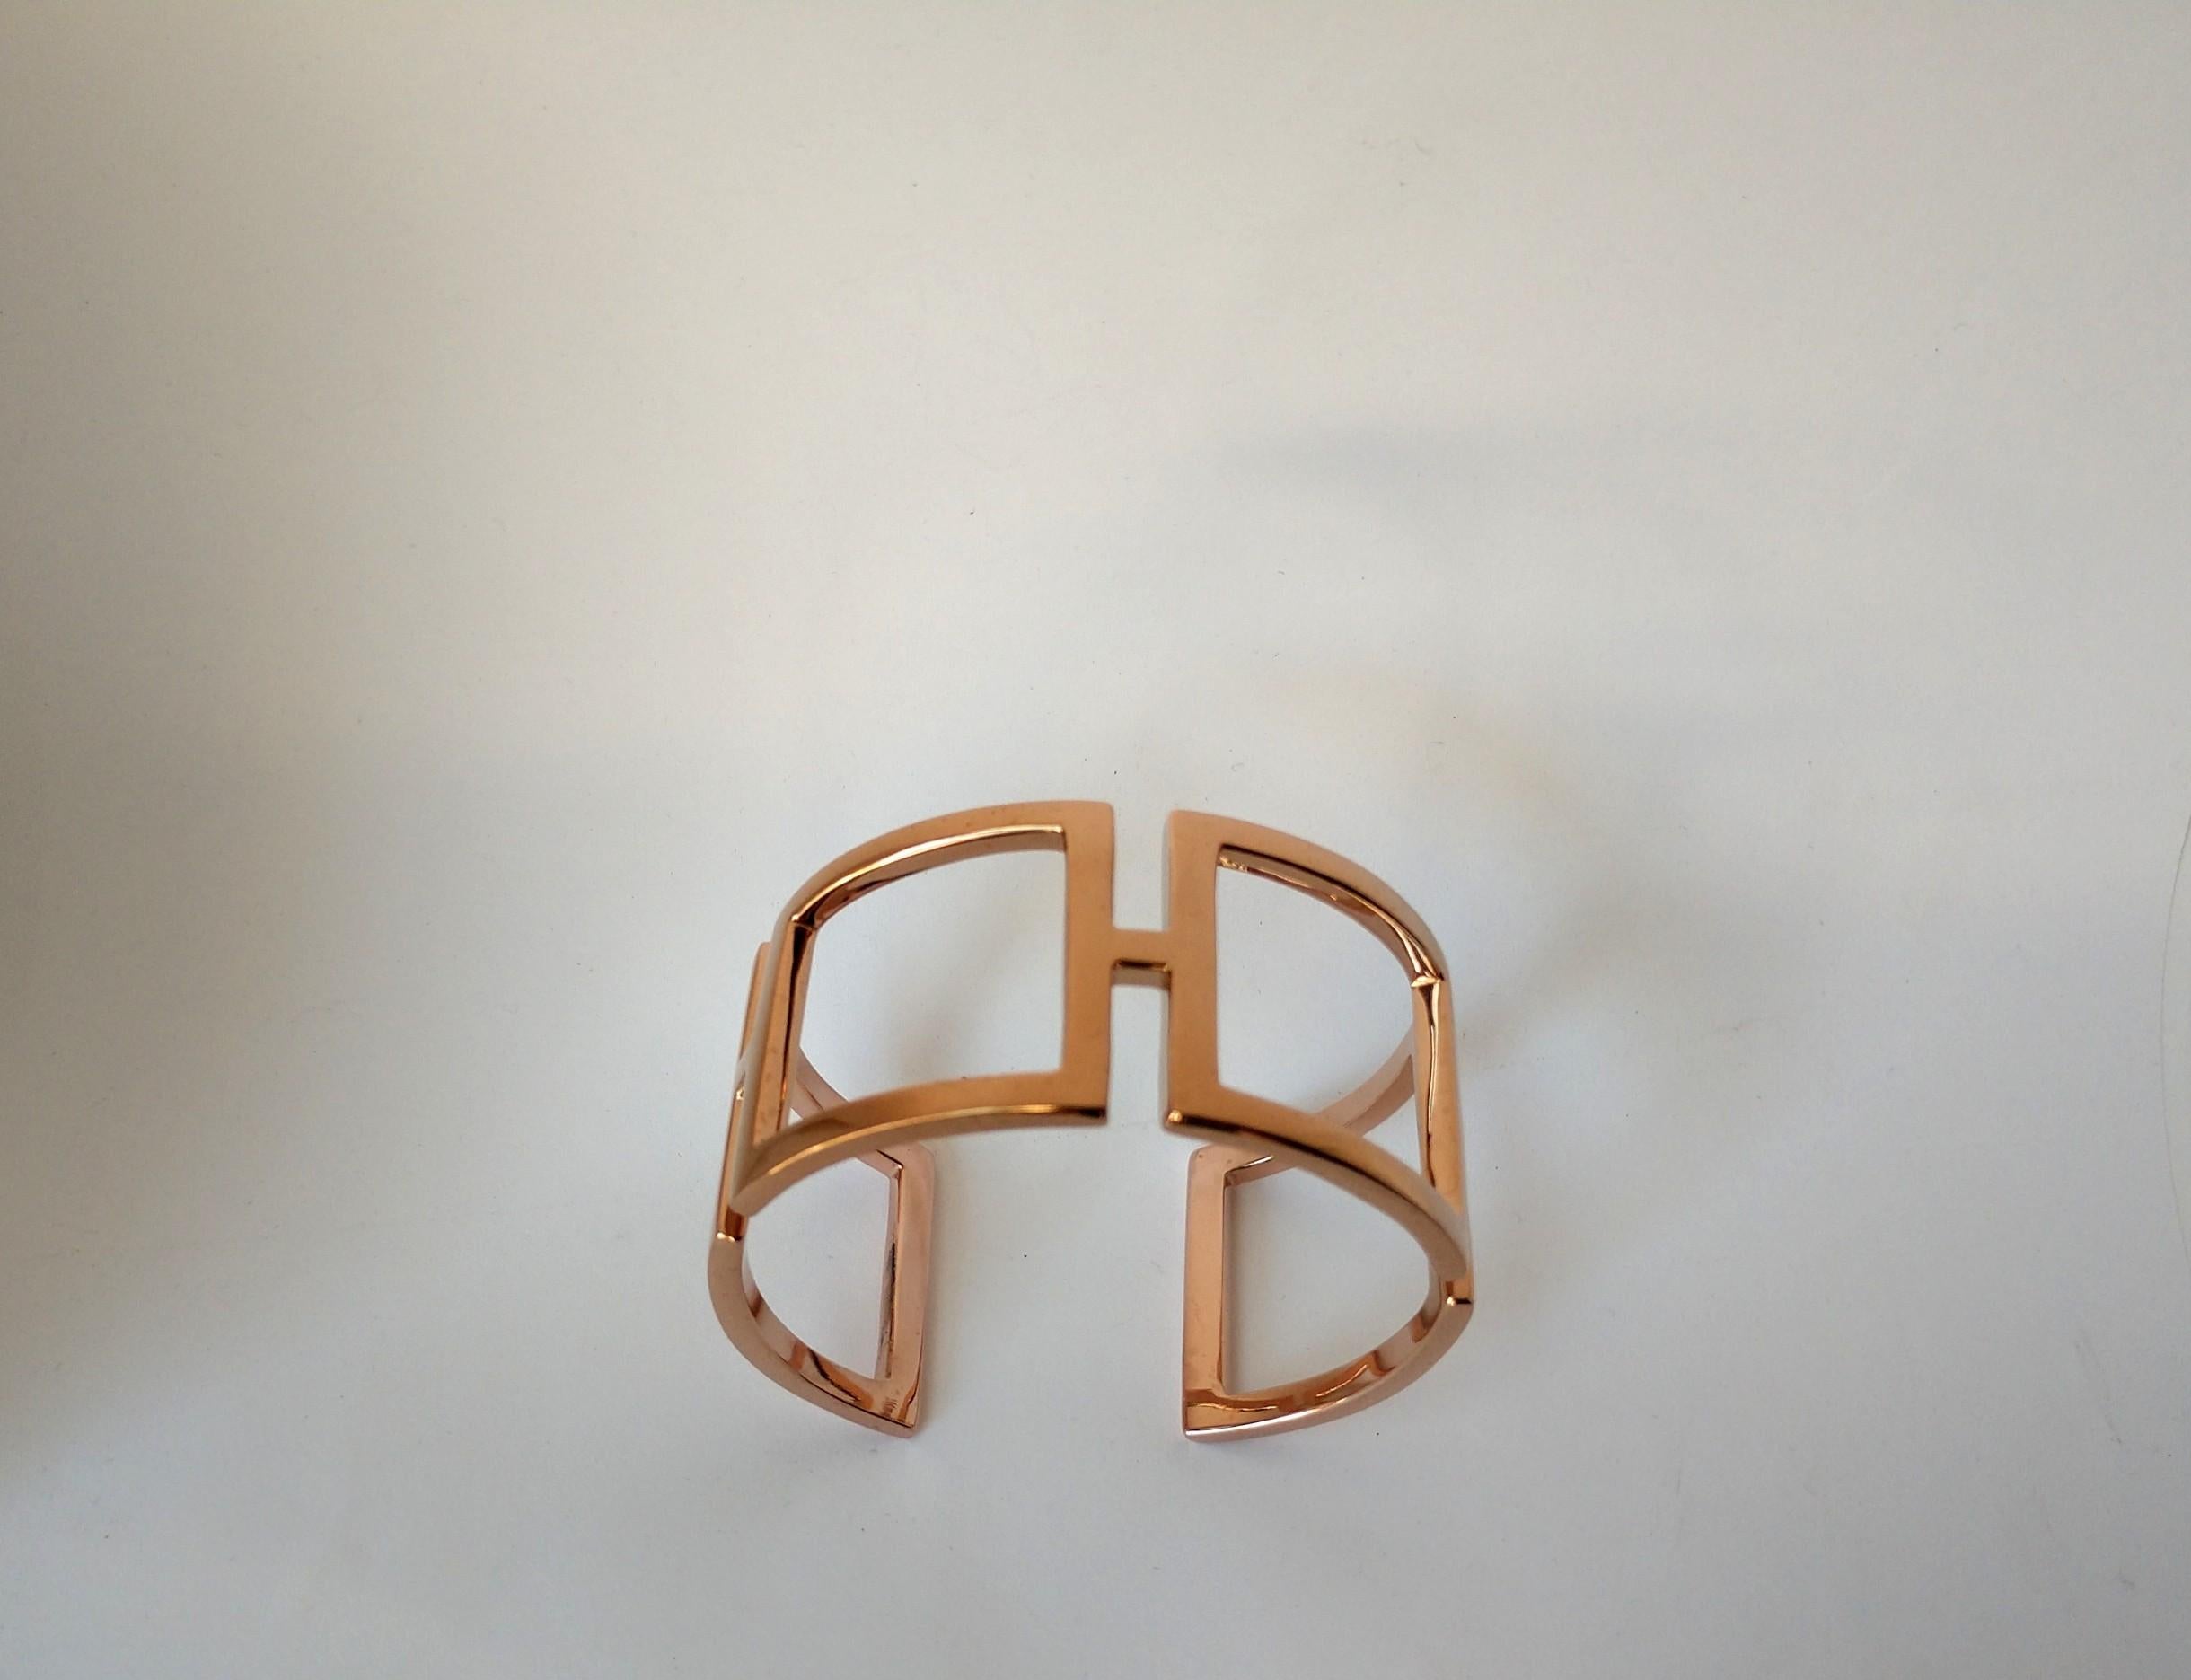 18 Karat Roségold Vermeil Rechteckiges Manschettenarmband, 3 x 1,5 mm dick x  mm 1 3/16stel Zoll  weit. Dies ist einer meiner frühen Entwürfe.  Ich benutzte das einfache Rechteck in einem gebogenen Zustand für den ultimativen Ausdruck einer Skulptur